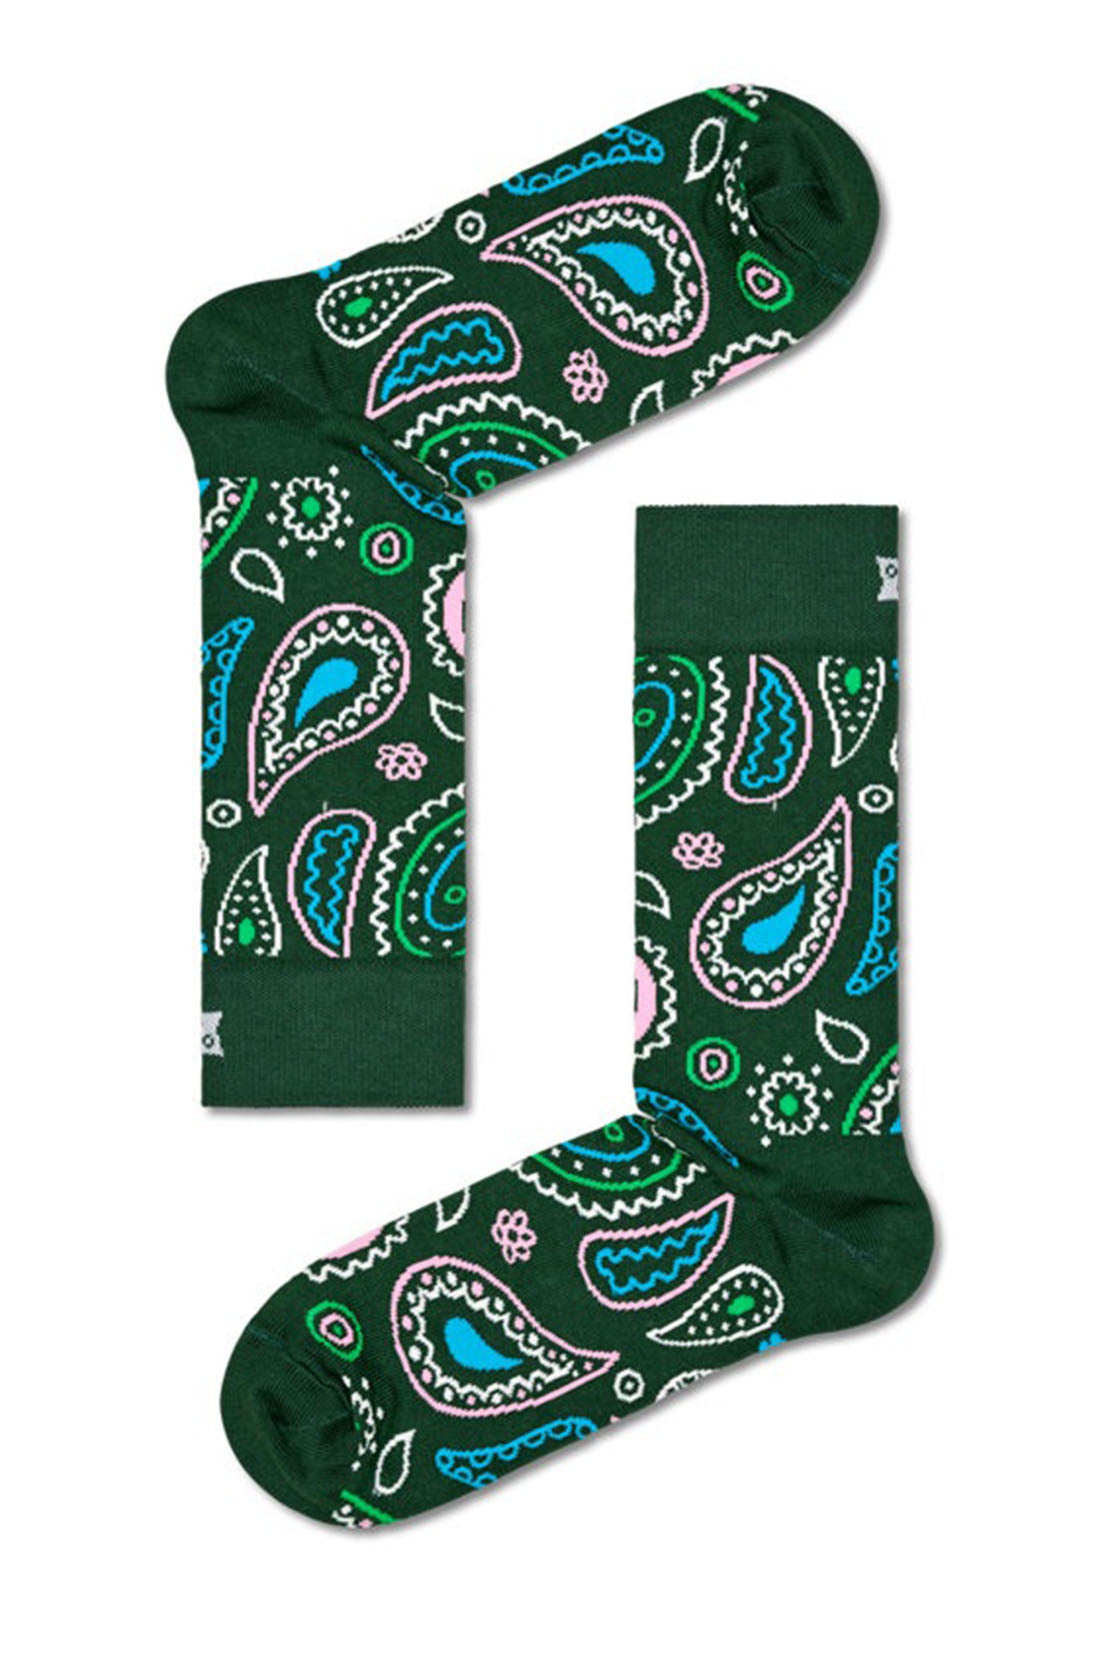 HAPPY SOCKS - PAISLEY Socks in Green P000086